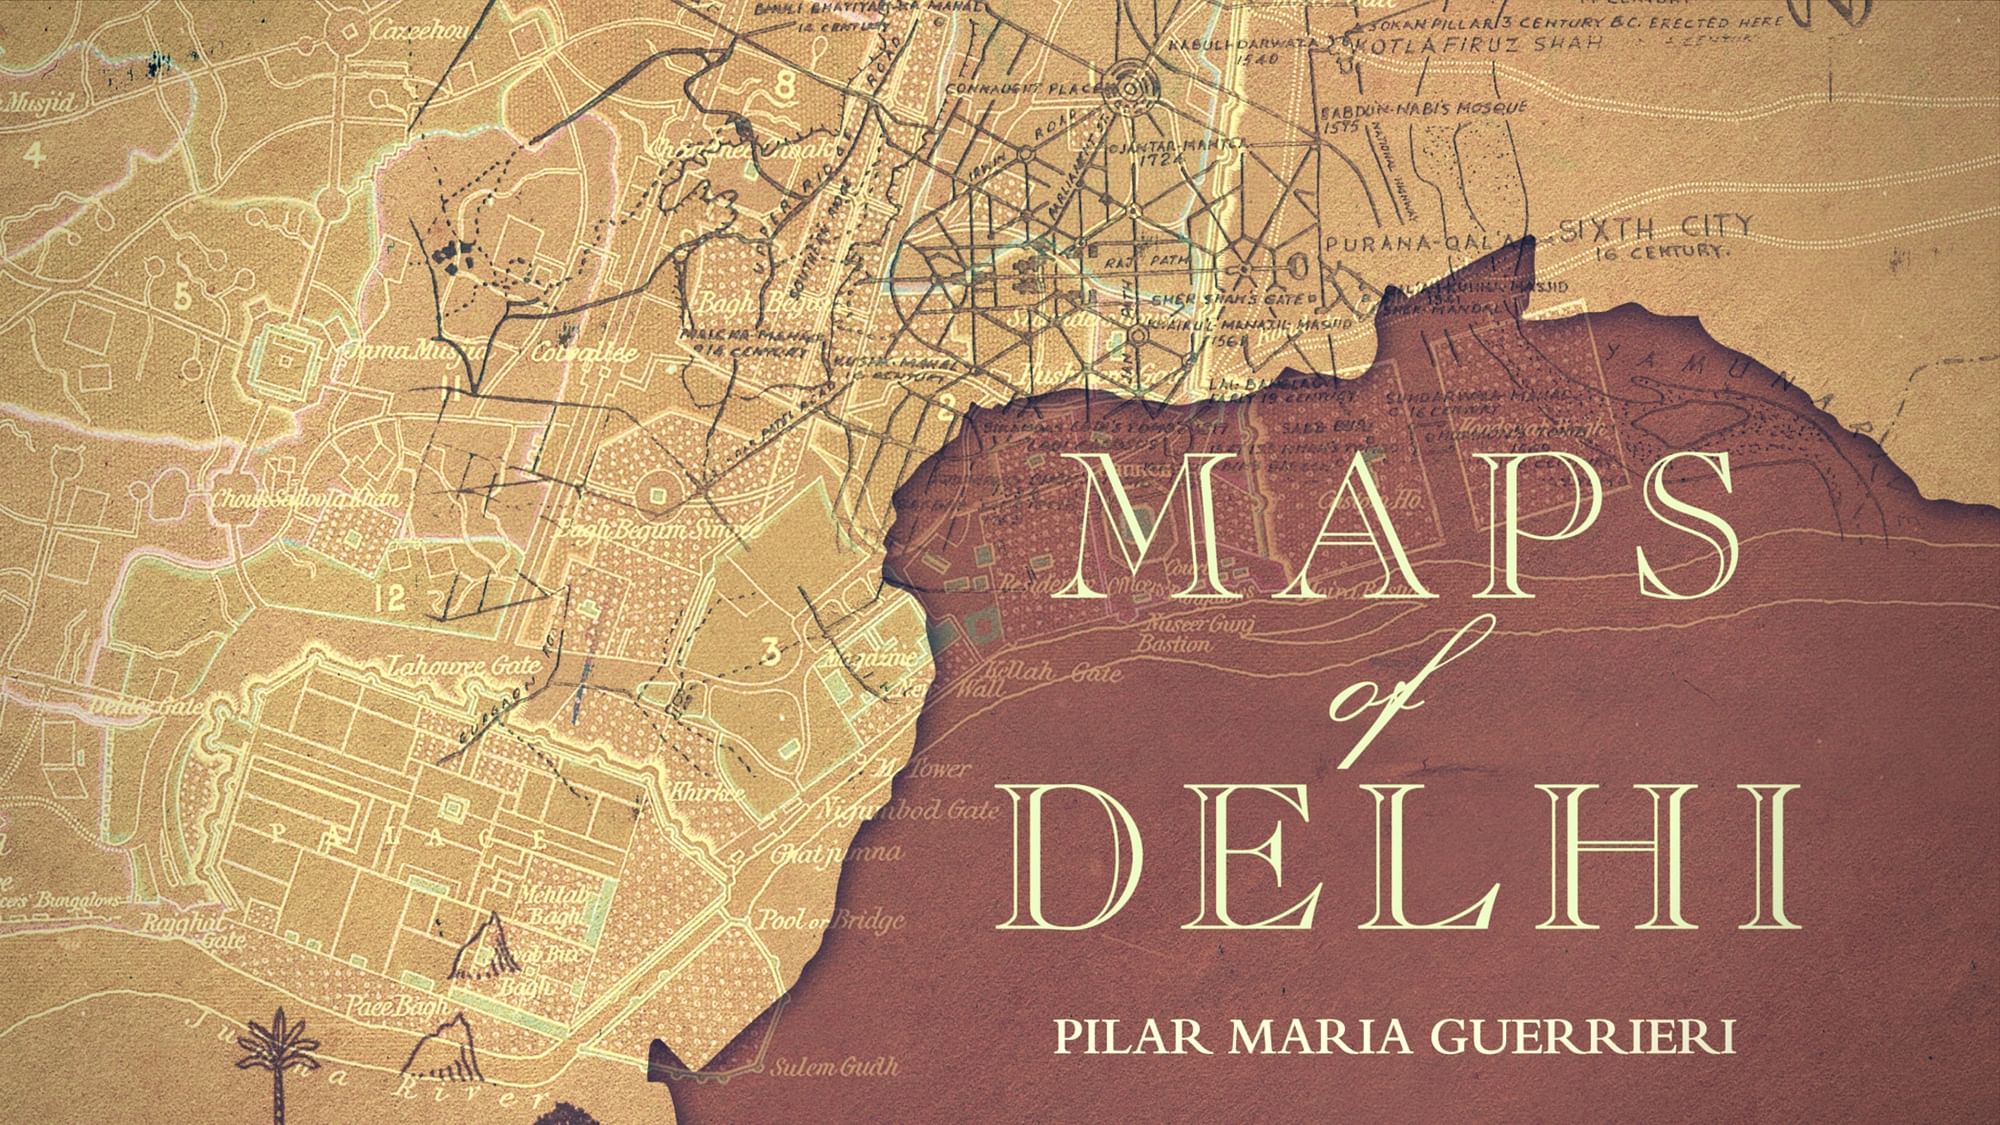 Cover of Pilar Maria Guerrieri’s book on Delhi